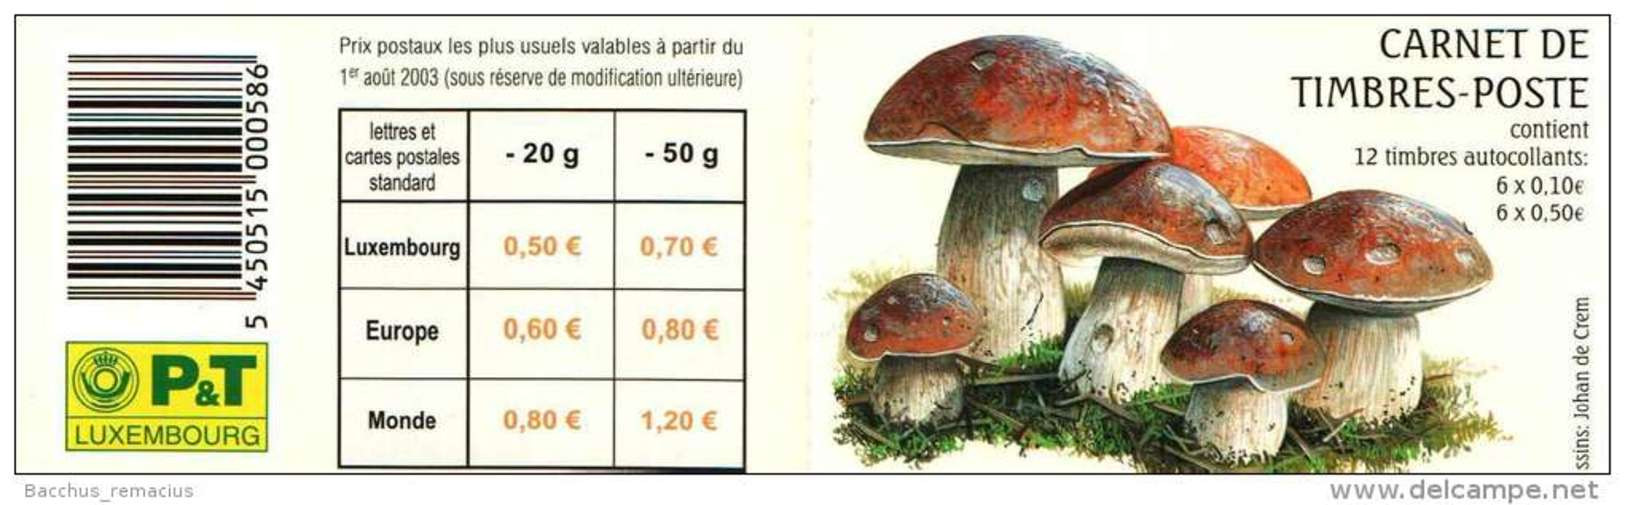 Luxembourg Carnet De Timbres-Poste Autocollants (6x0,50 Et 6x0,10 Euro) Champignons Pilze Mushrooms 2004 - Markenheftchen